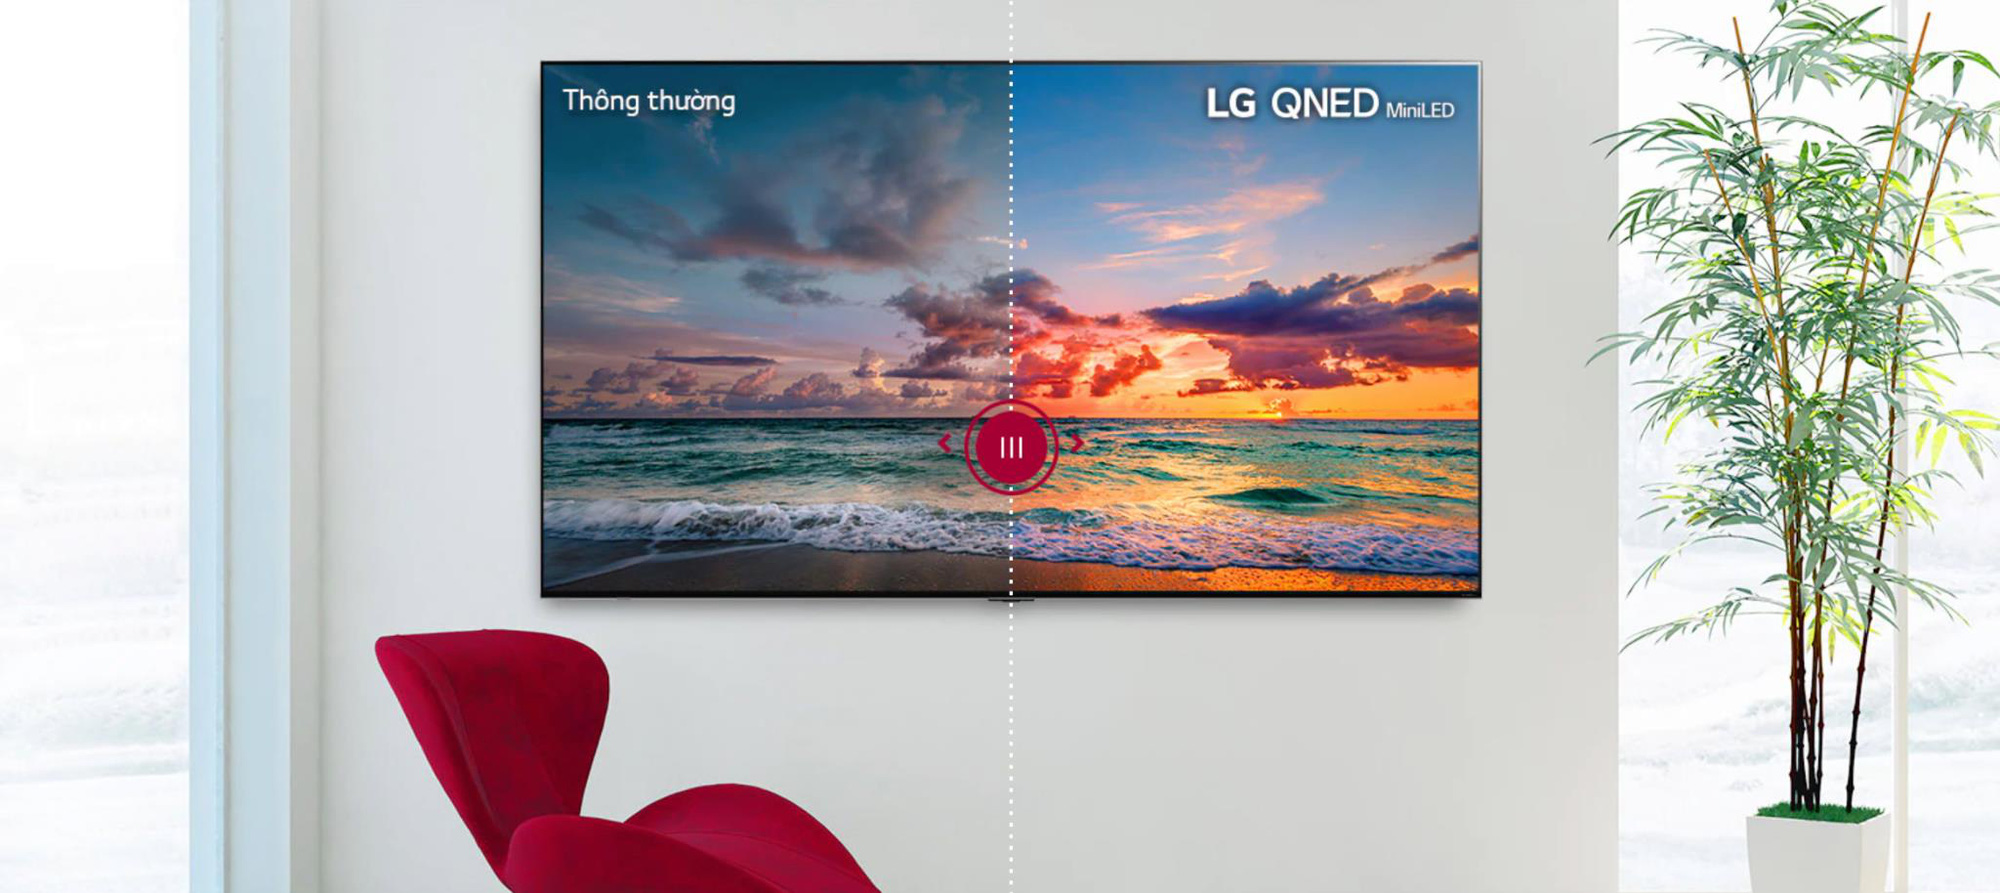 LG QNED 8K và những trải nghiệm chưa từng có trên TV LCD